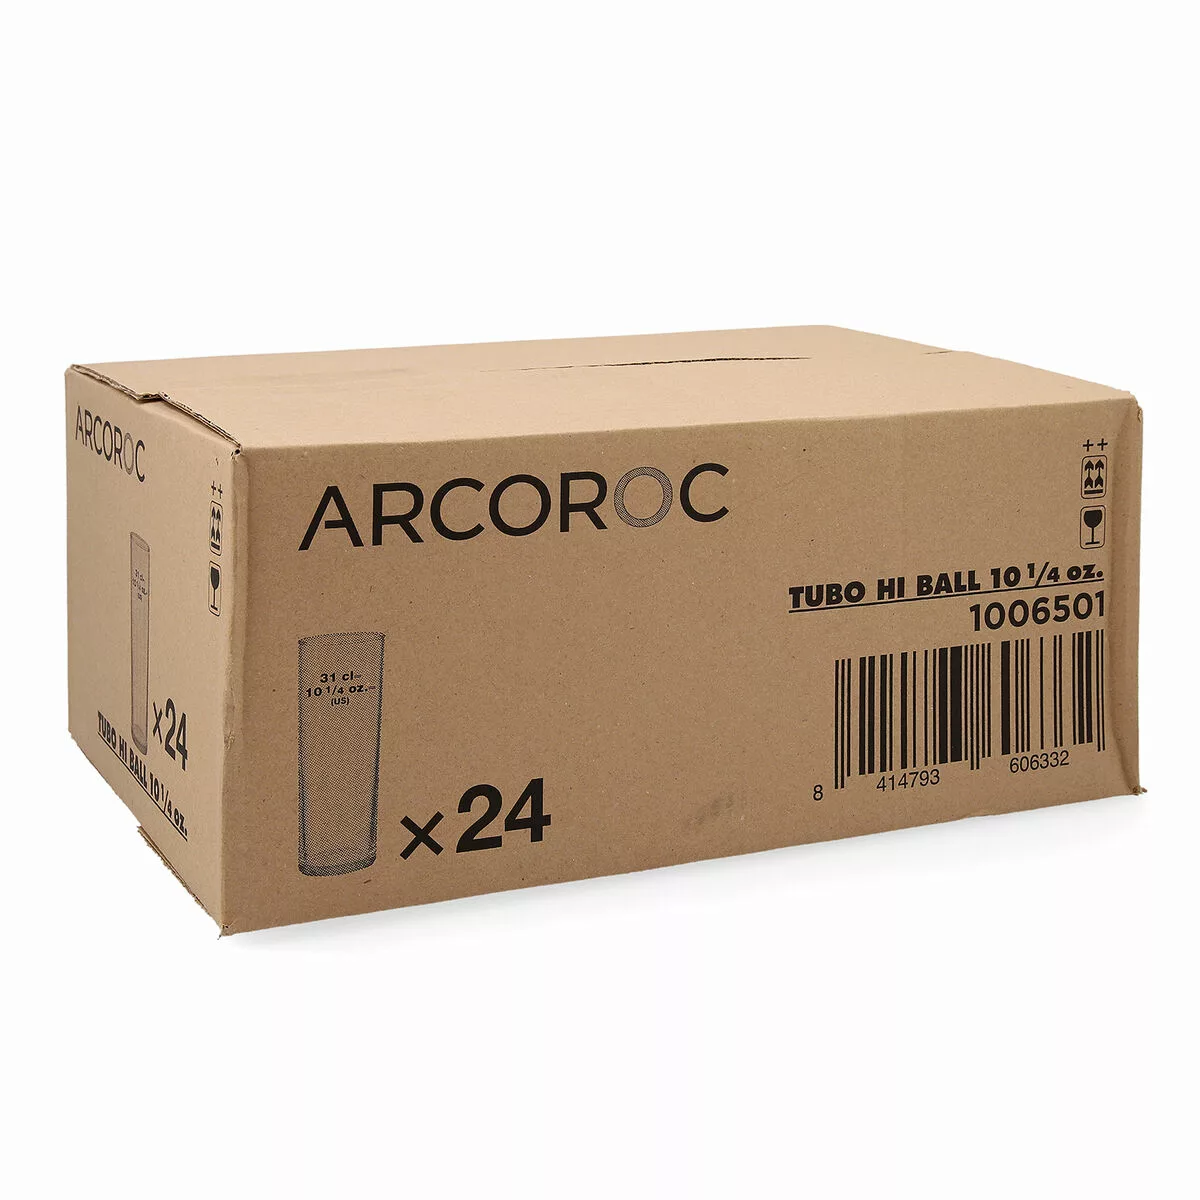 Gläserset Arcoroc   Röhre Durchsichtig Glas 300 Ml (24 Stück) günstig online kaufen